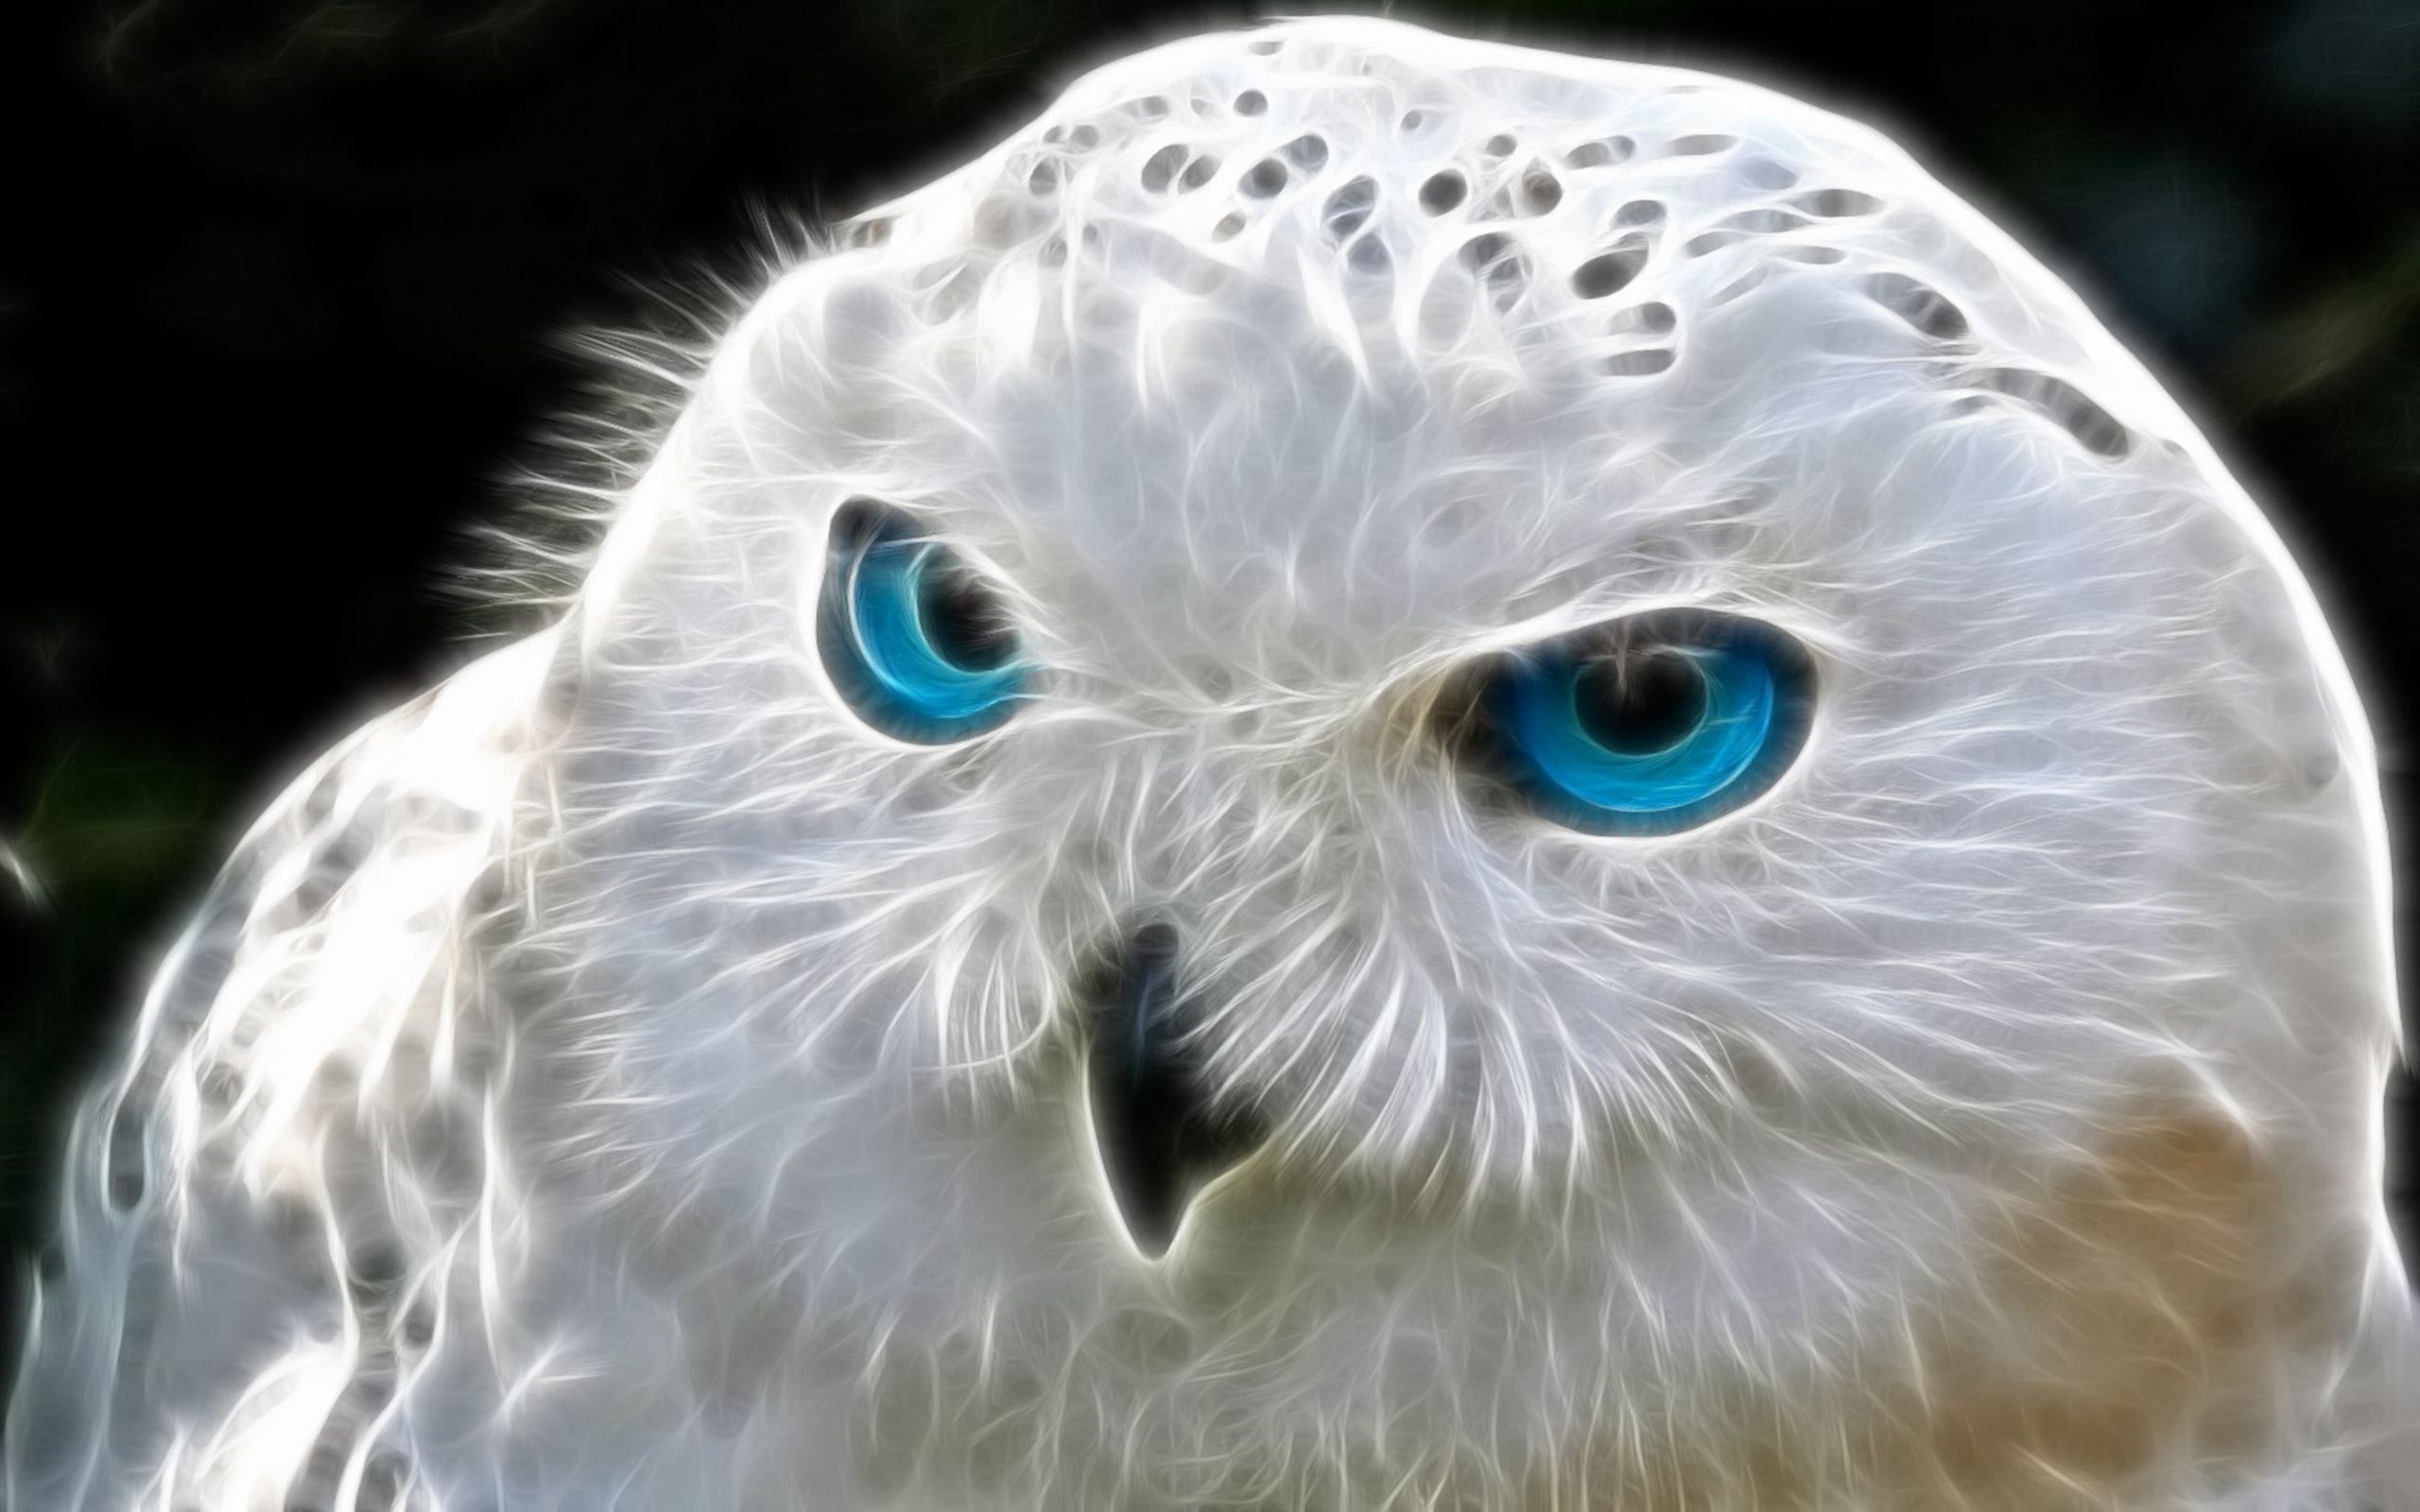 2560x1600 Animal - Owl White Blue Eye Fractal Digital Abstract Wallpaper